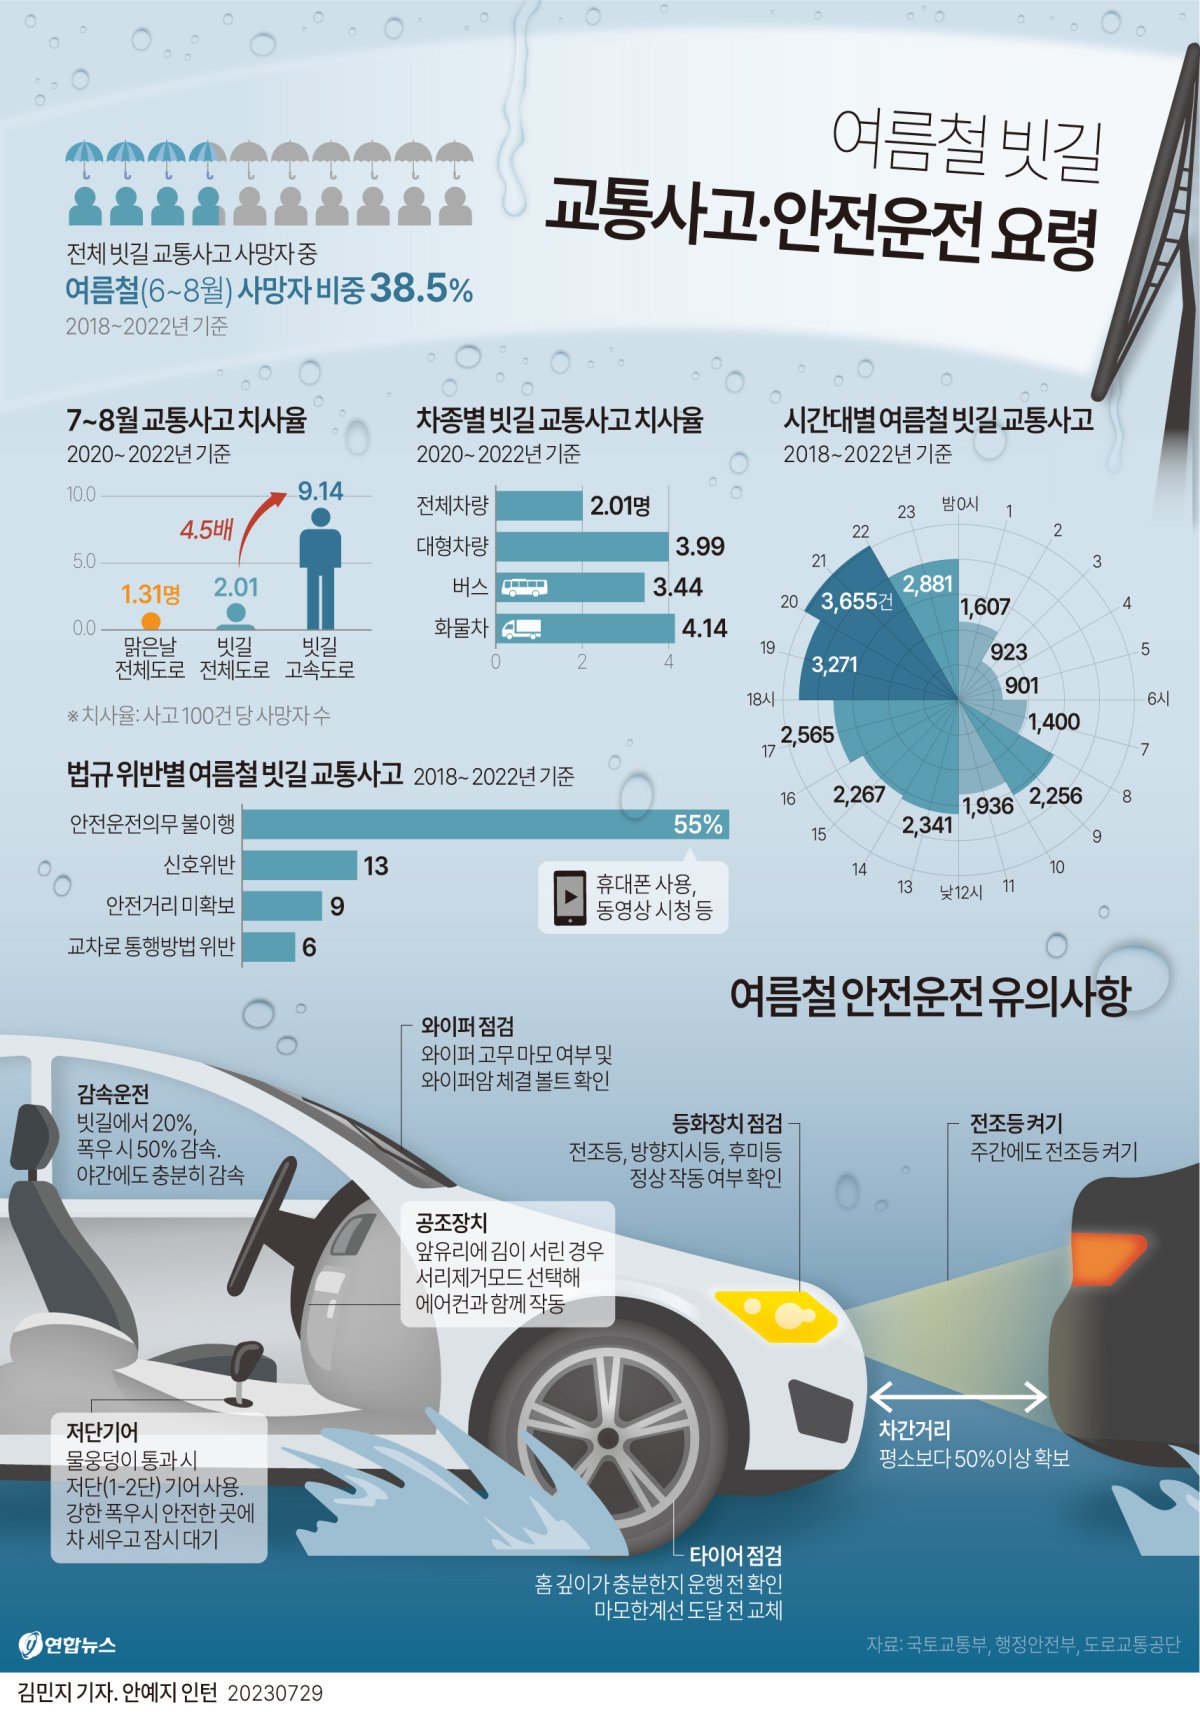 [그래픽] 여름철 빗길 교통사고·안전운전 요령